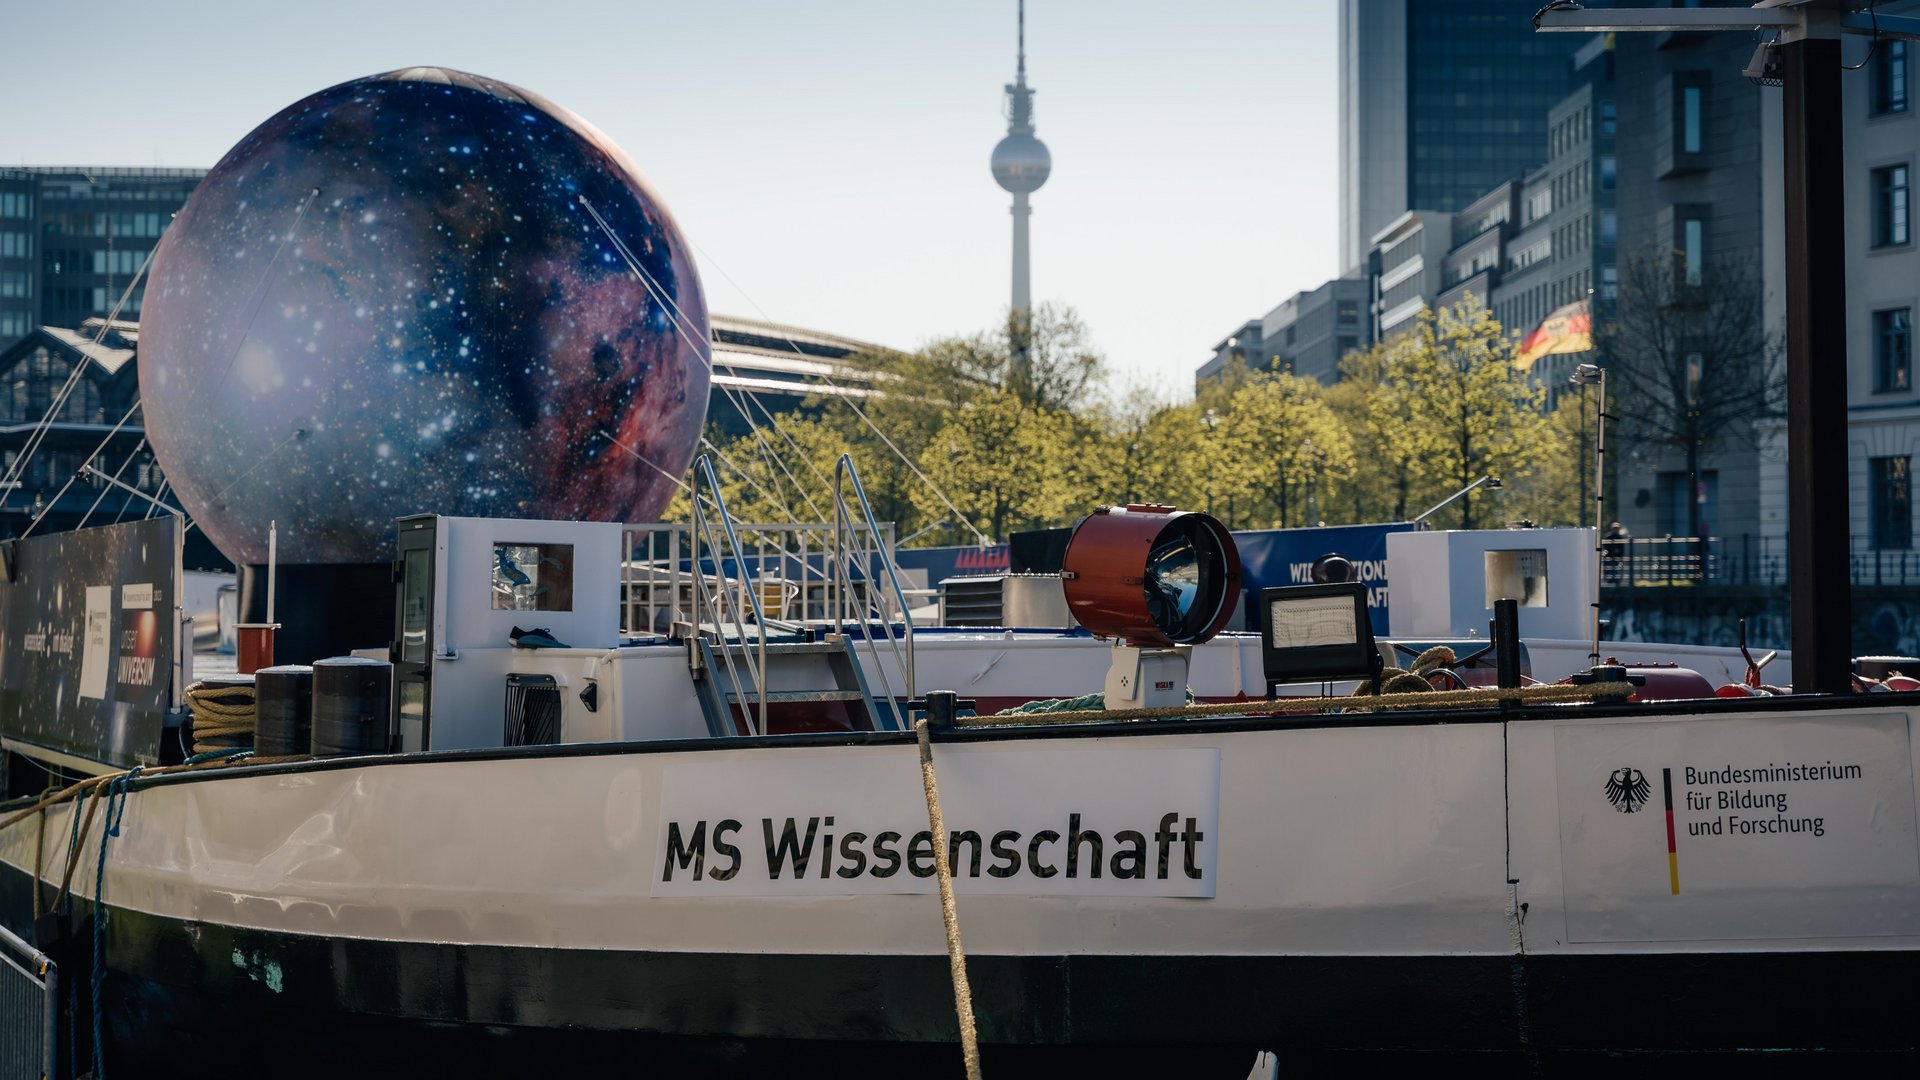 Projektbild des Frachtschiffes der "MS Wissenschaft" mit einer große Attrappe des Mondes an Deck.